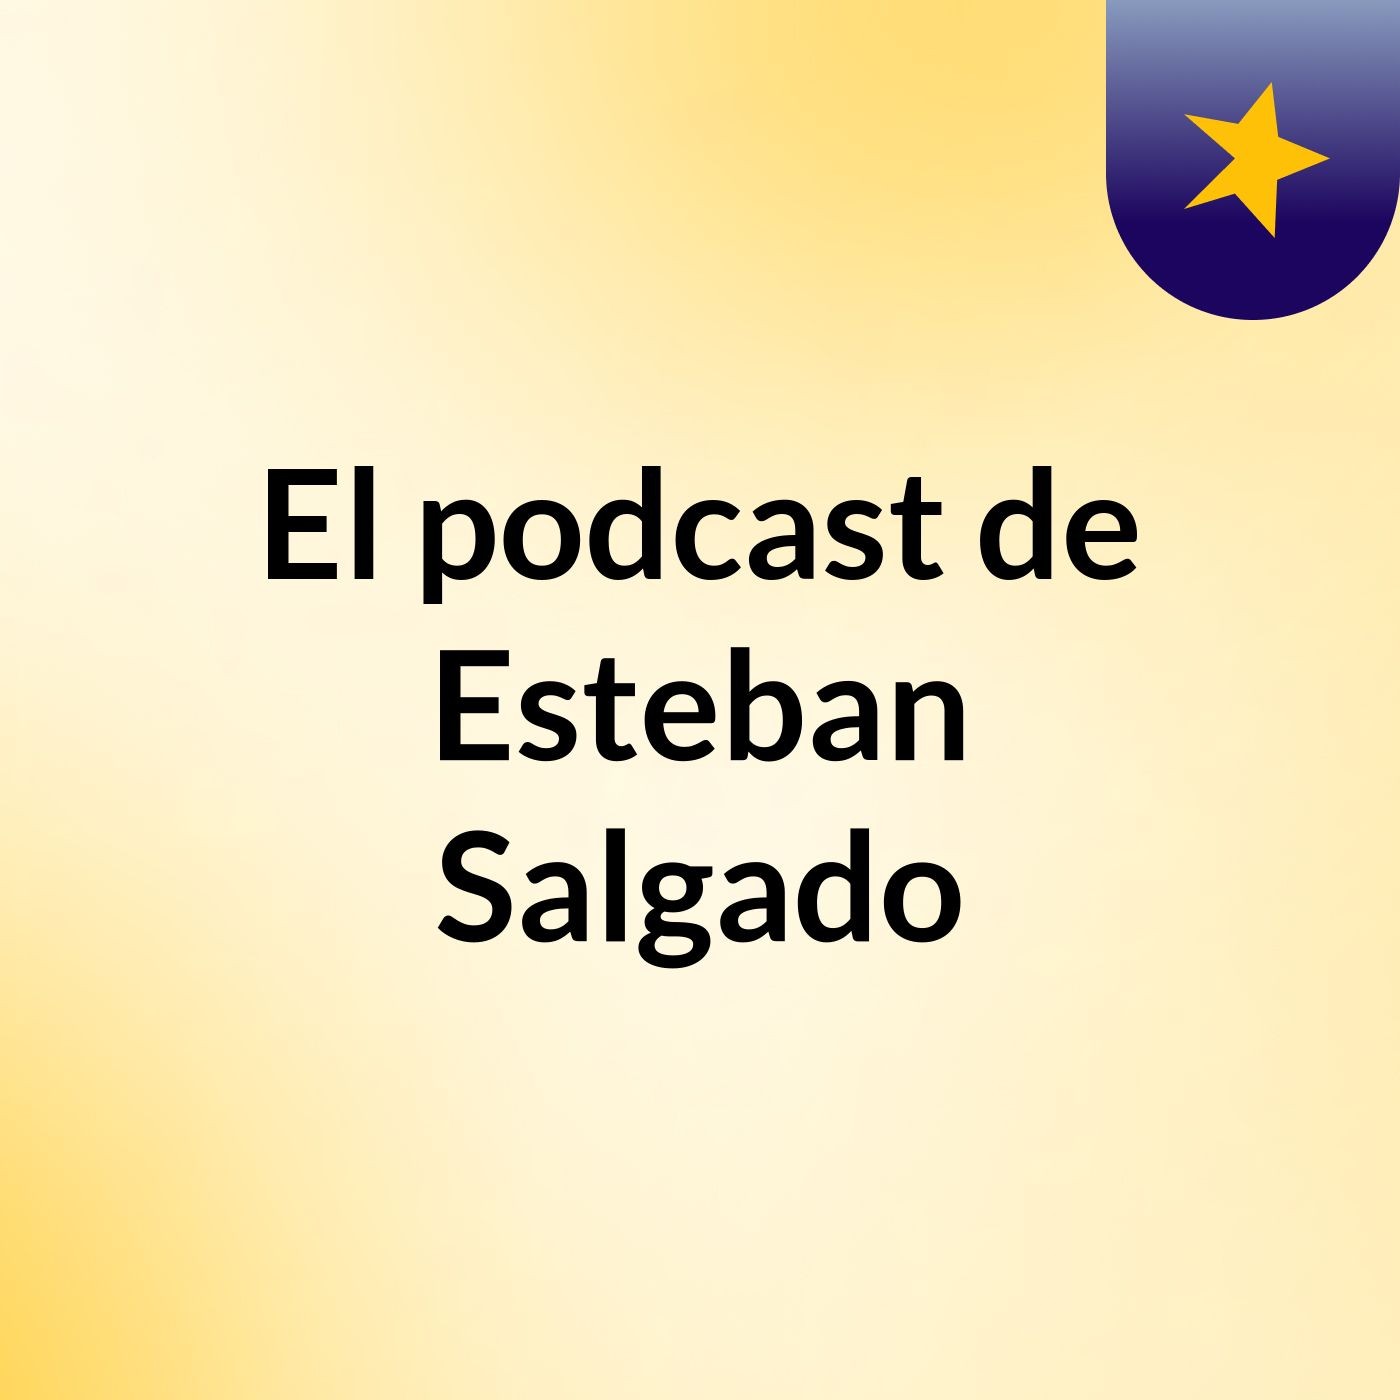 El podcast de Esteban Salgado